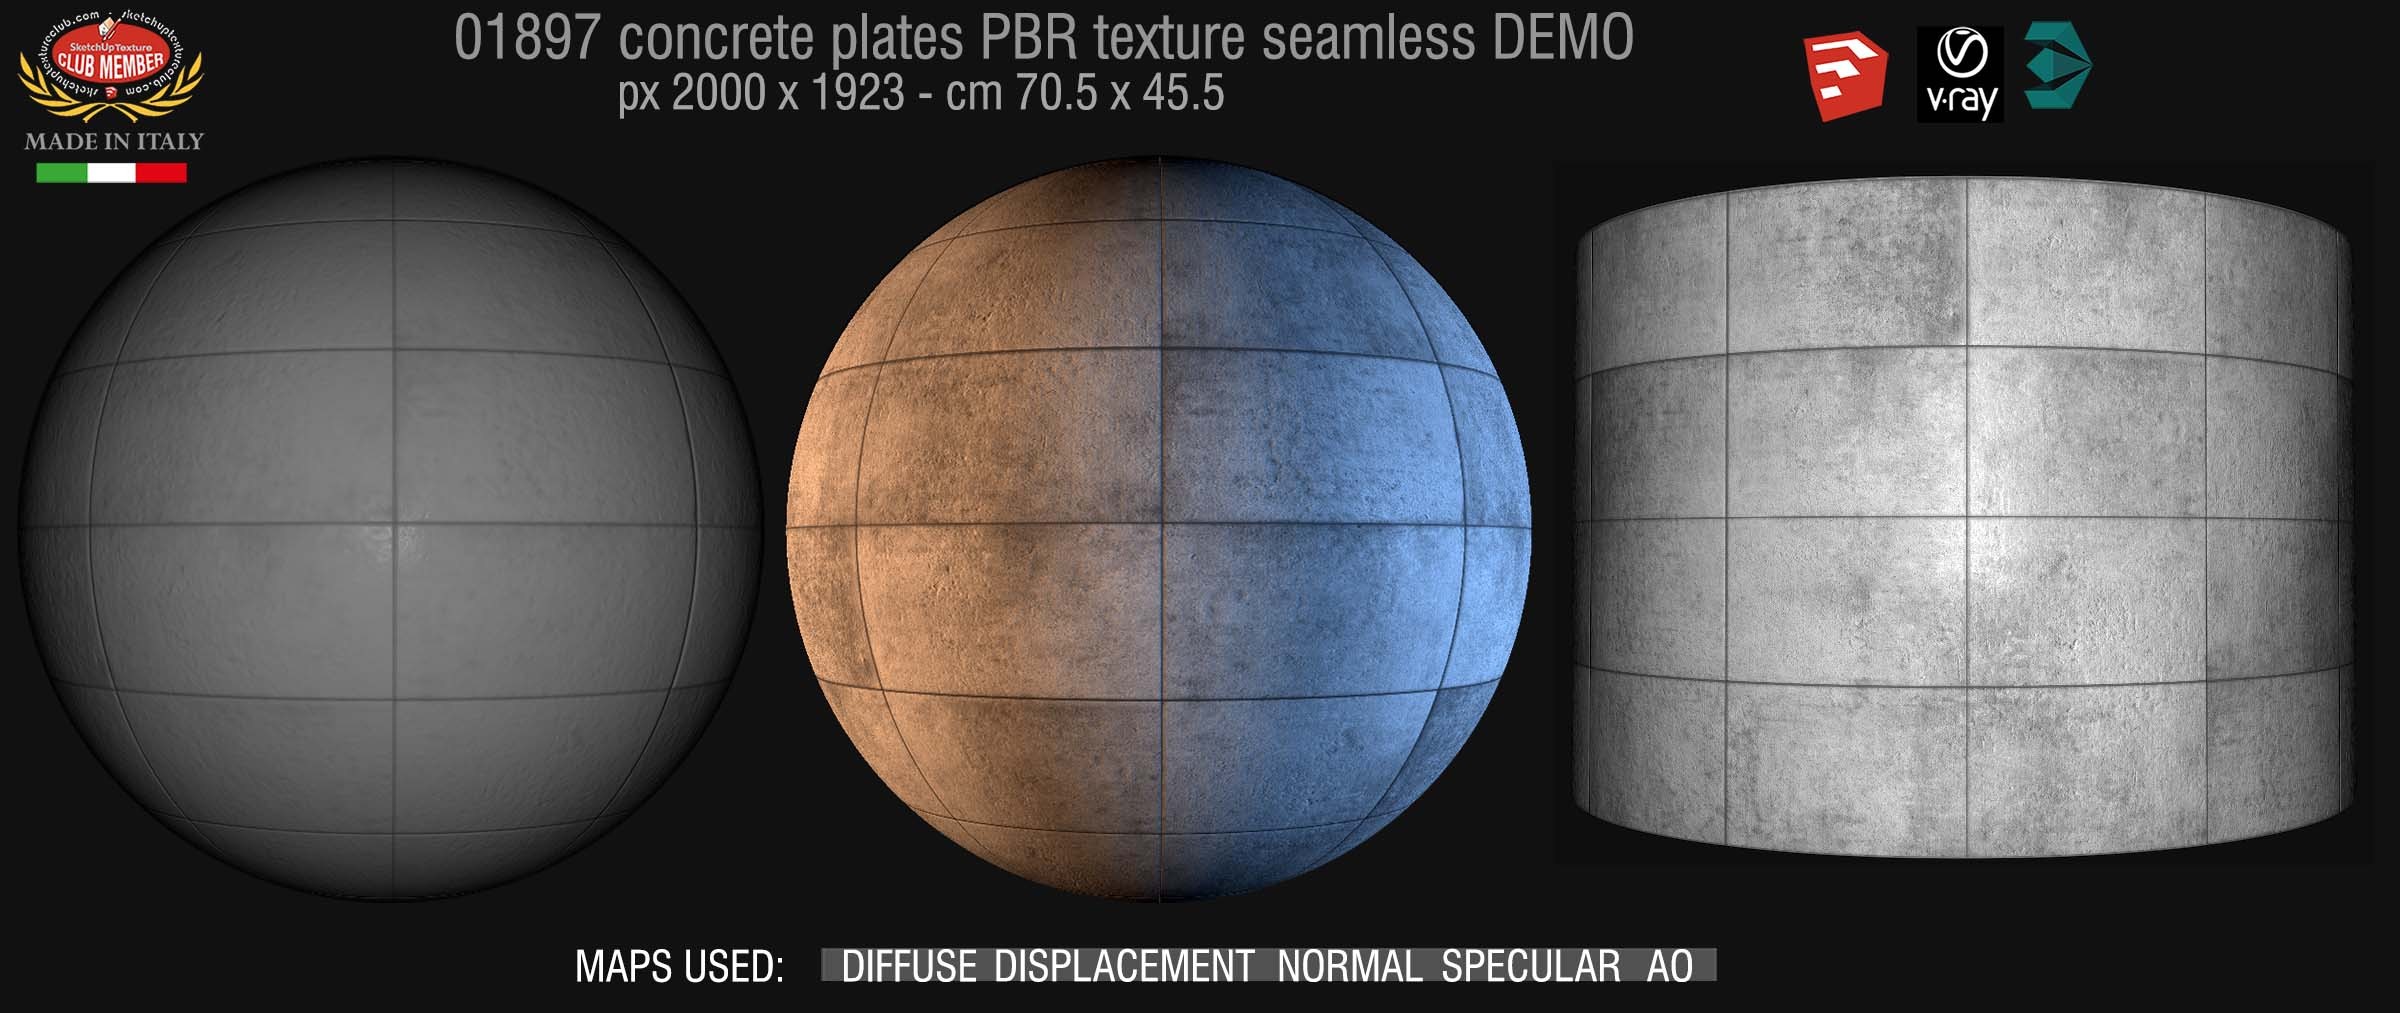 01897 tadao ando concrete plates PBR texture seamless DEMO